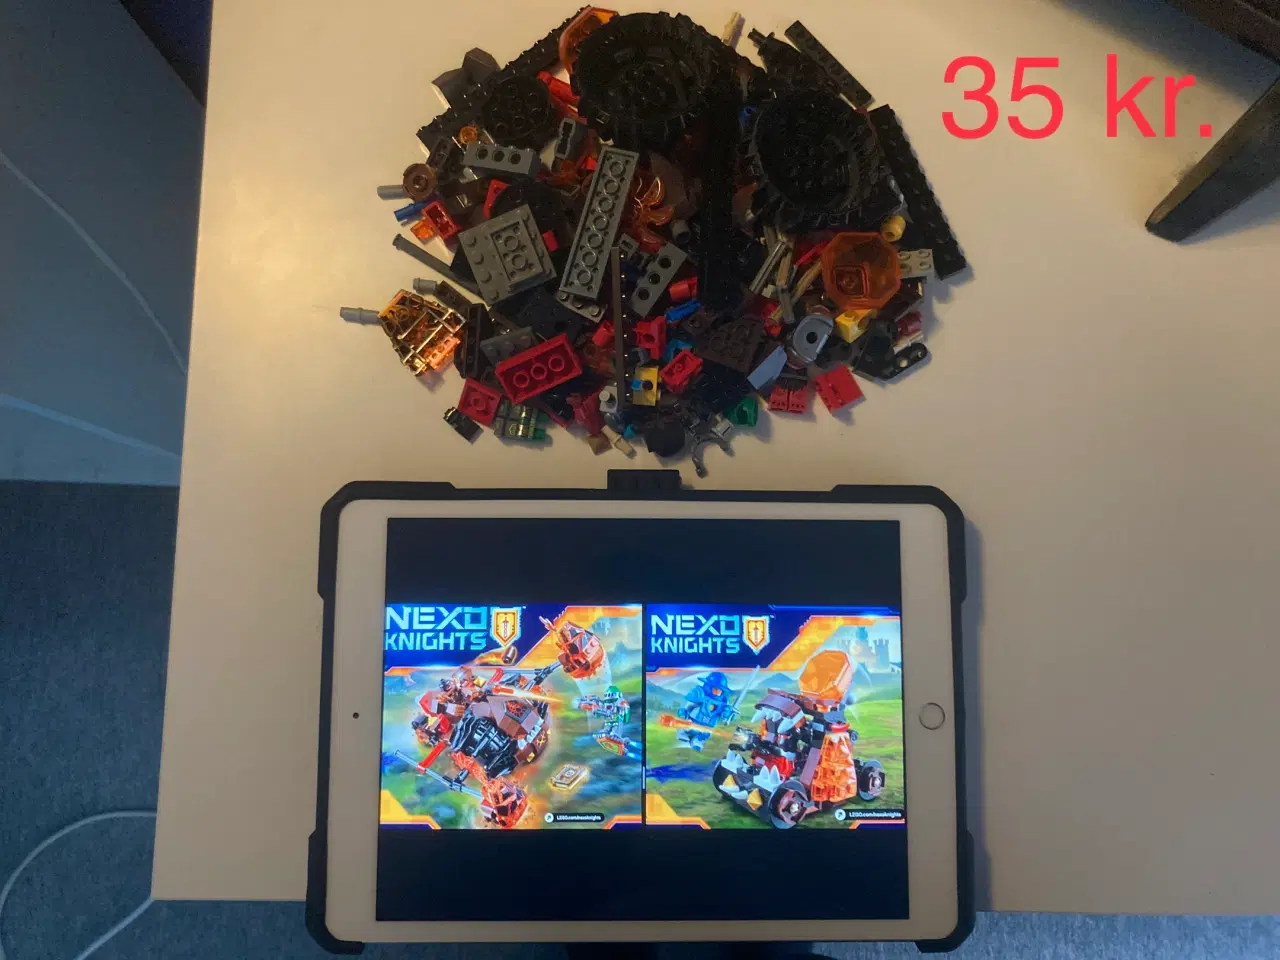 Billede 18 - Legosæt sælges (priserne er fra 5 kr. til 200 kr.)